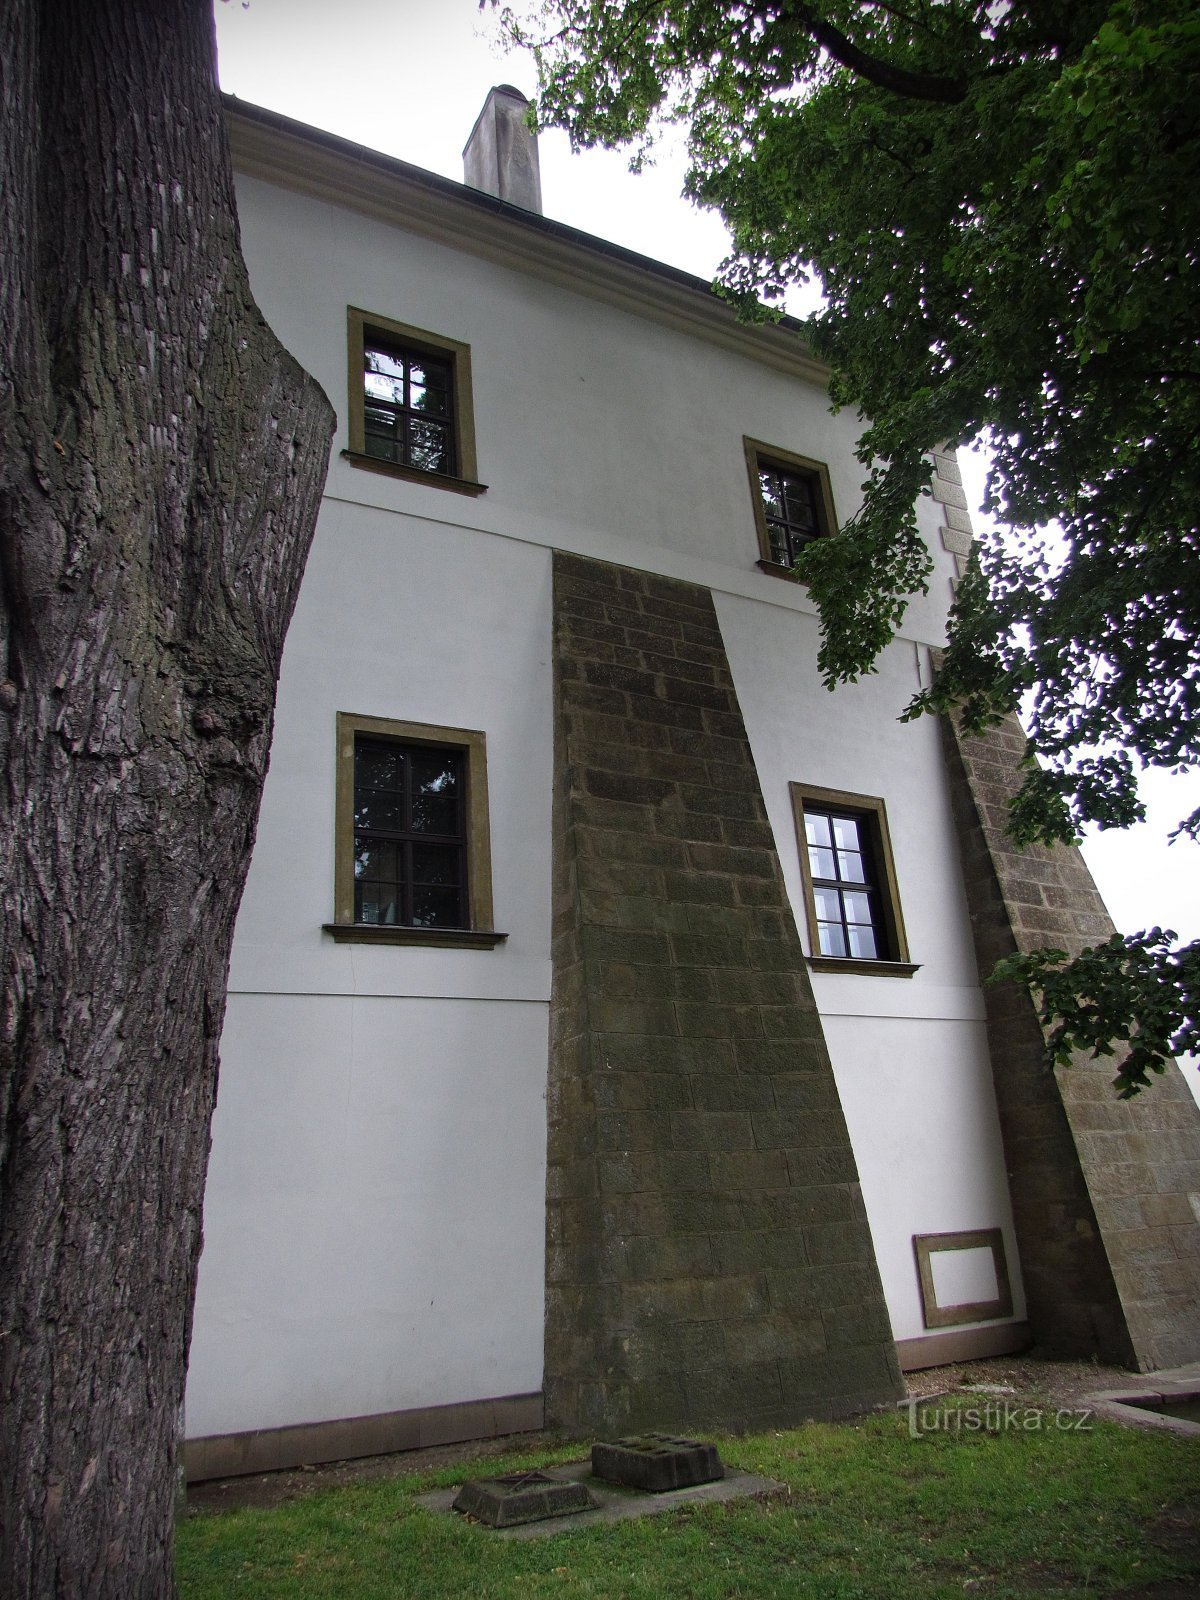 Die Räumlichkeiten des Schlosses in Letohrad